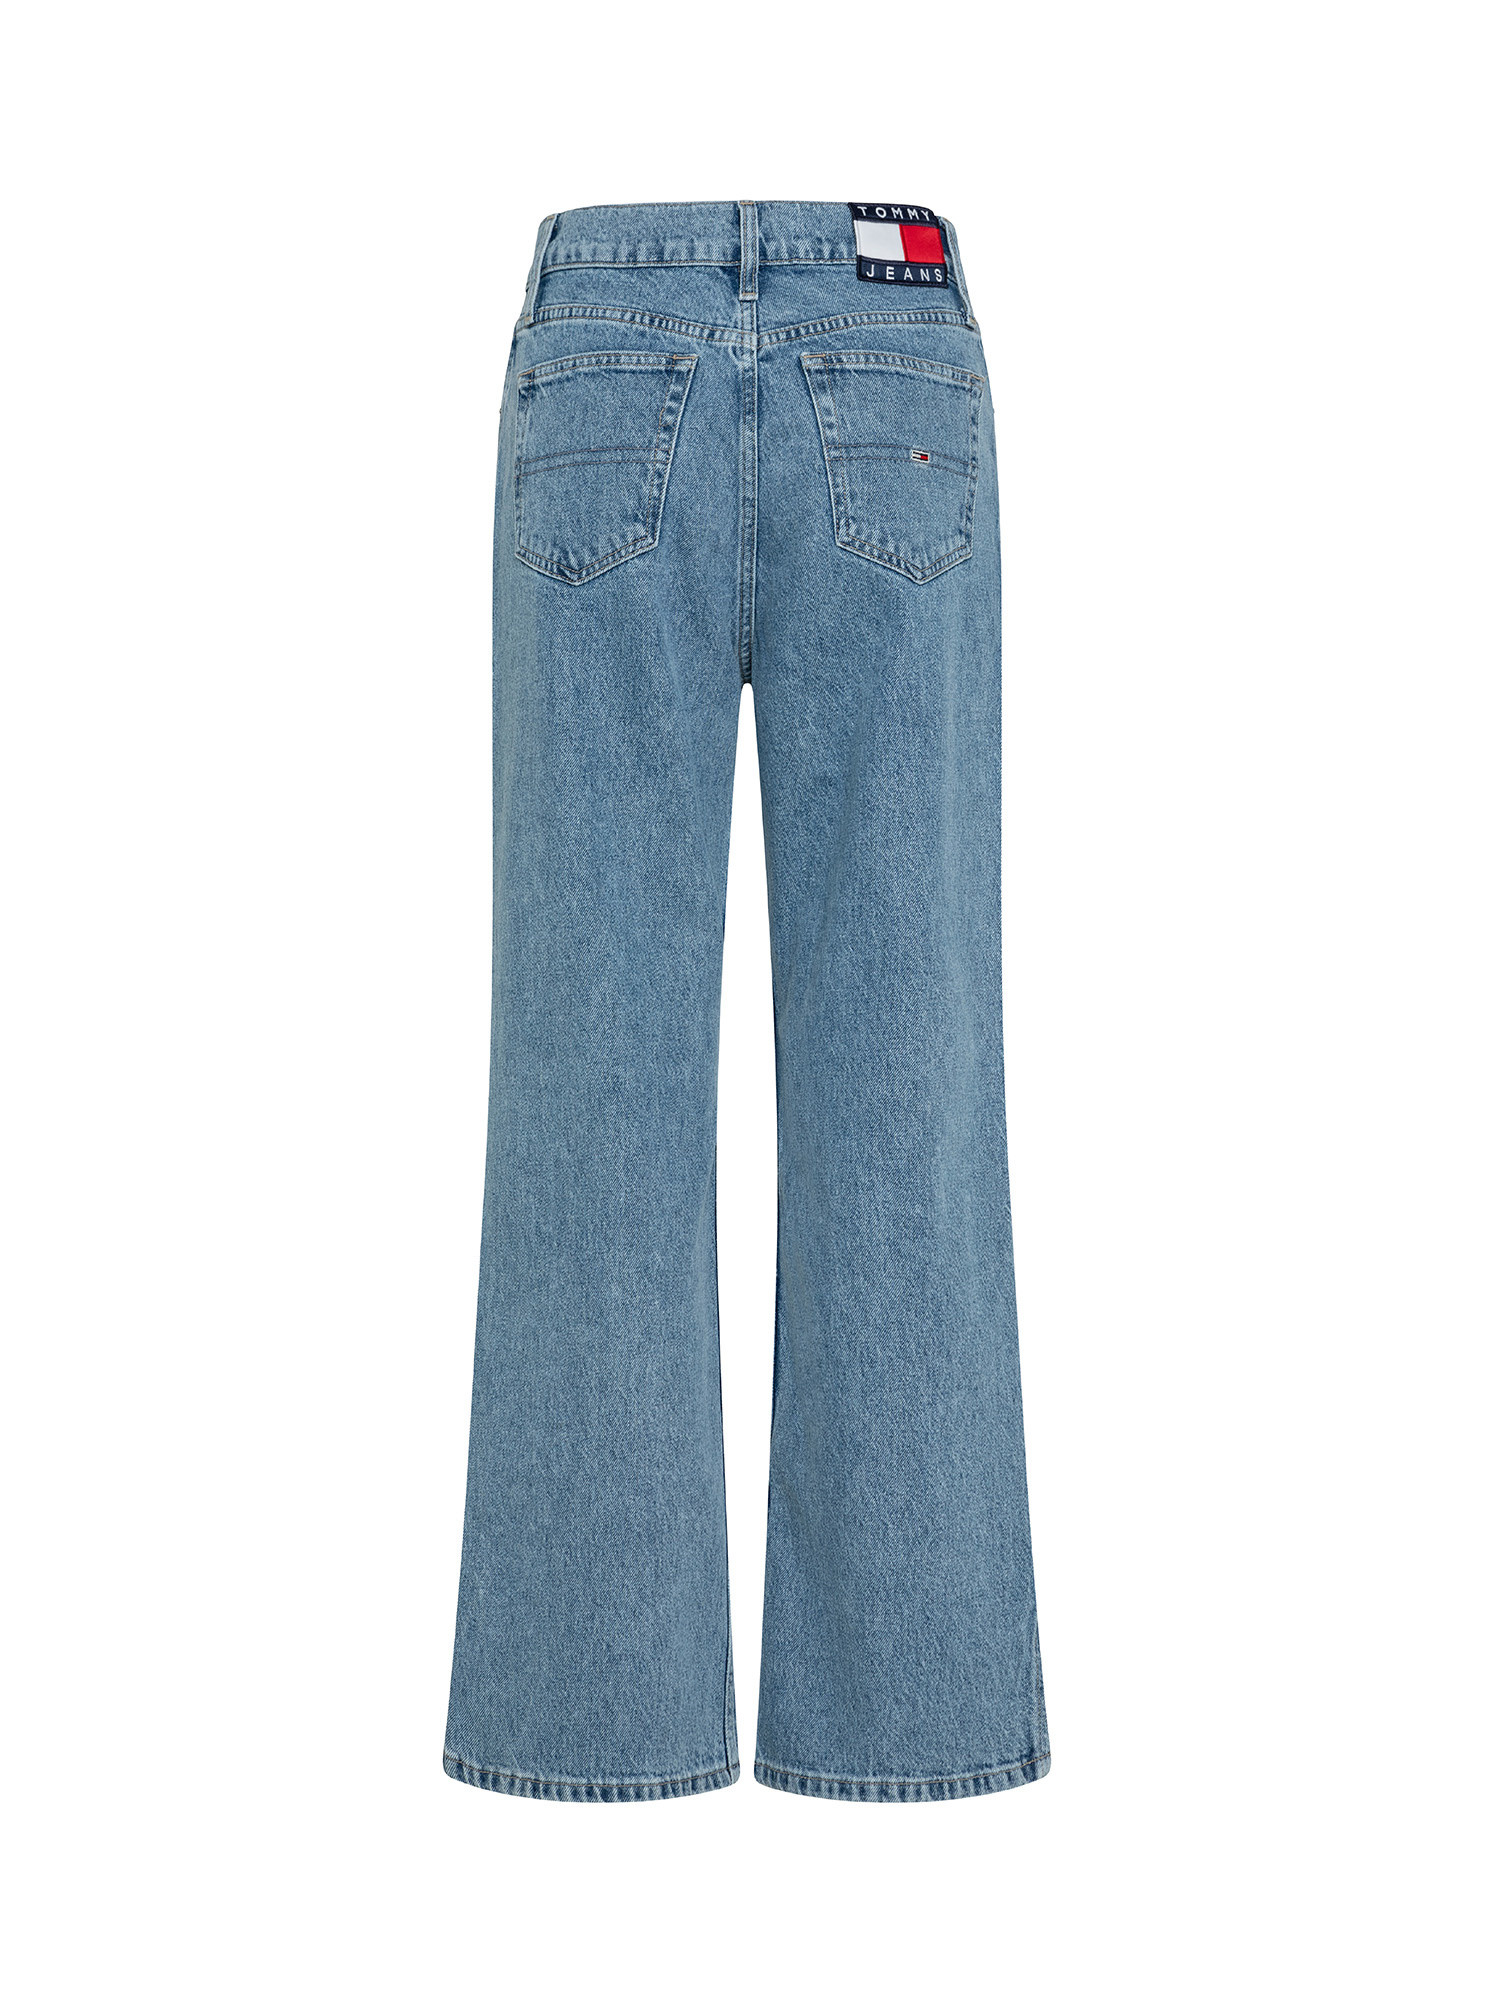 Tommy Jeans - Jeans a vita alta, Denim, large image number 1